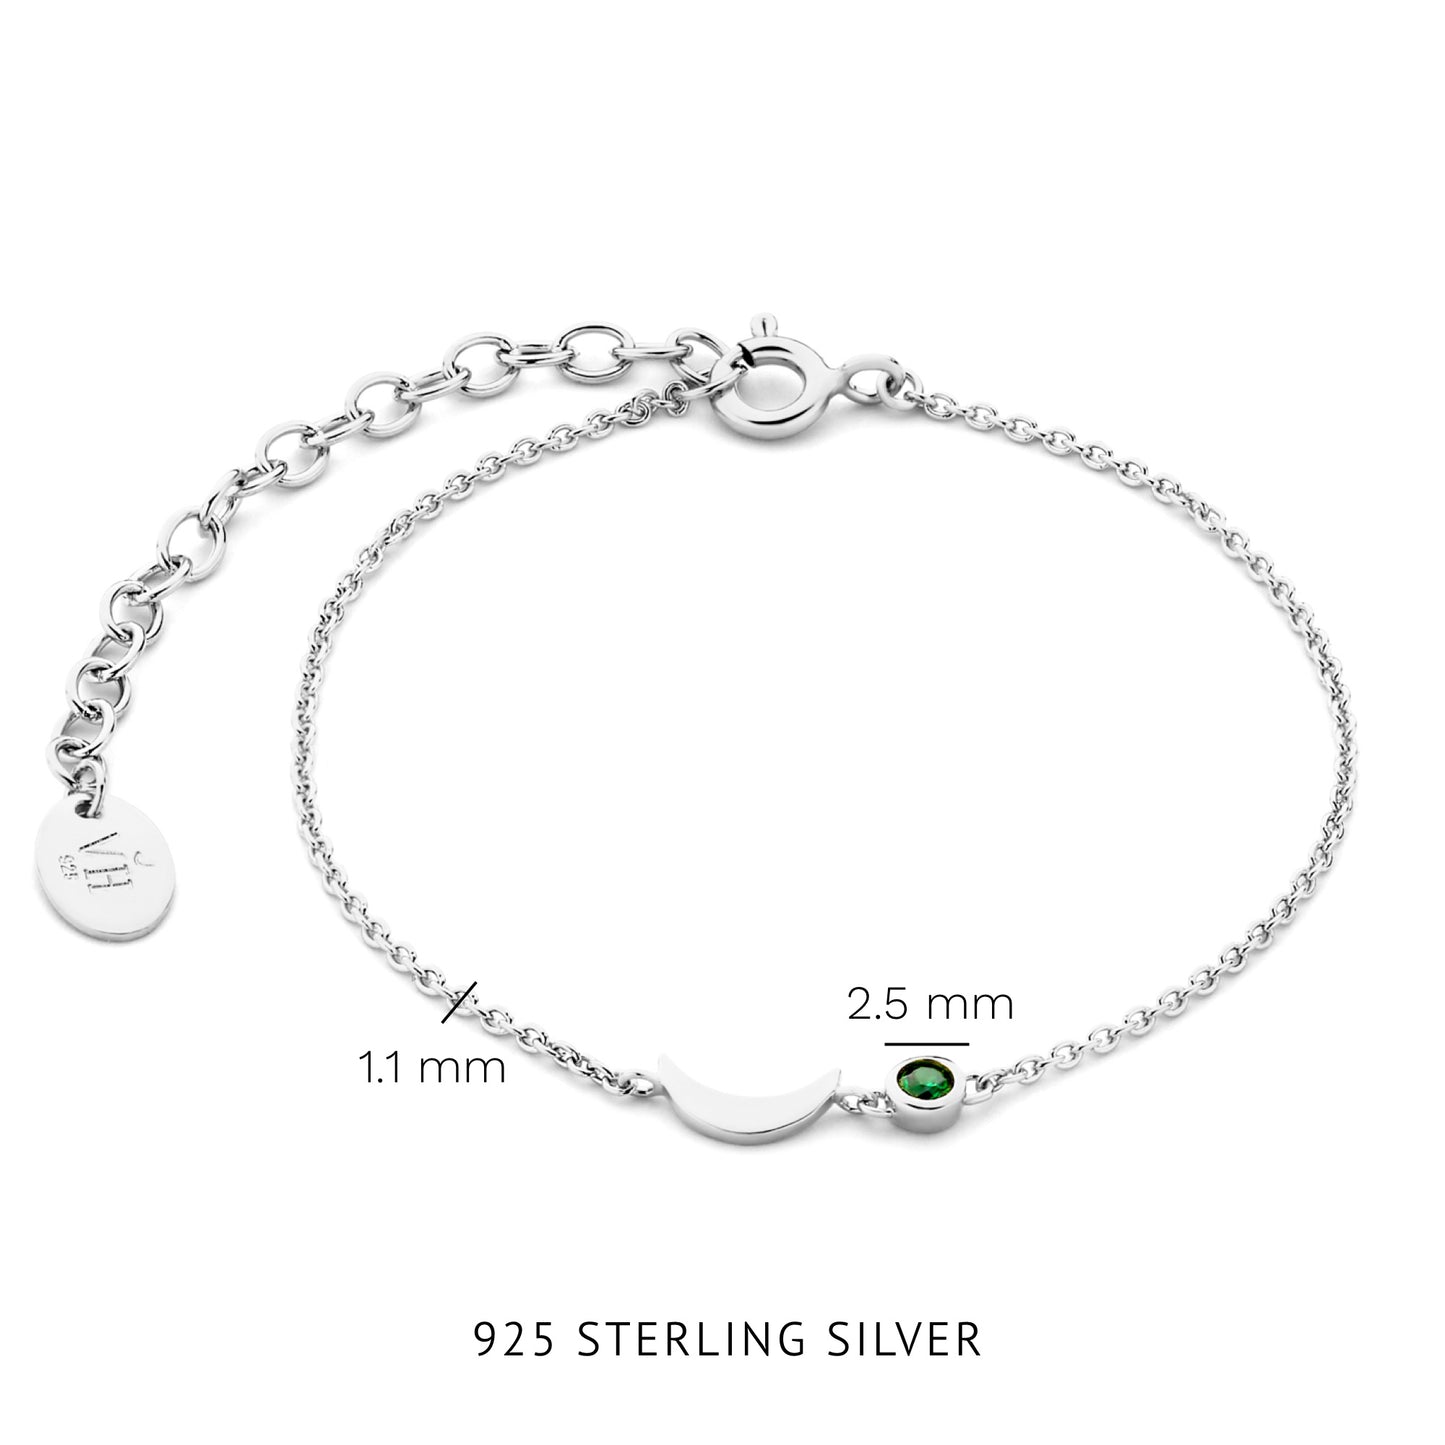 Luna 925 Sterling Silber Armband mit grünem Zirkonia Stein